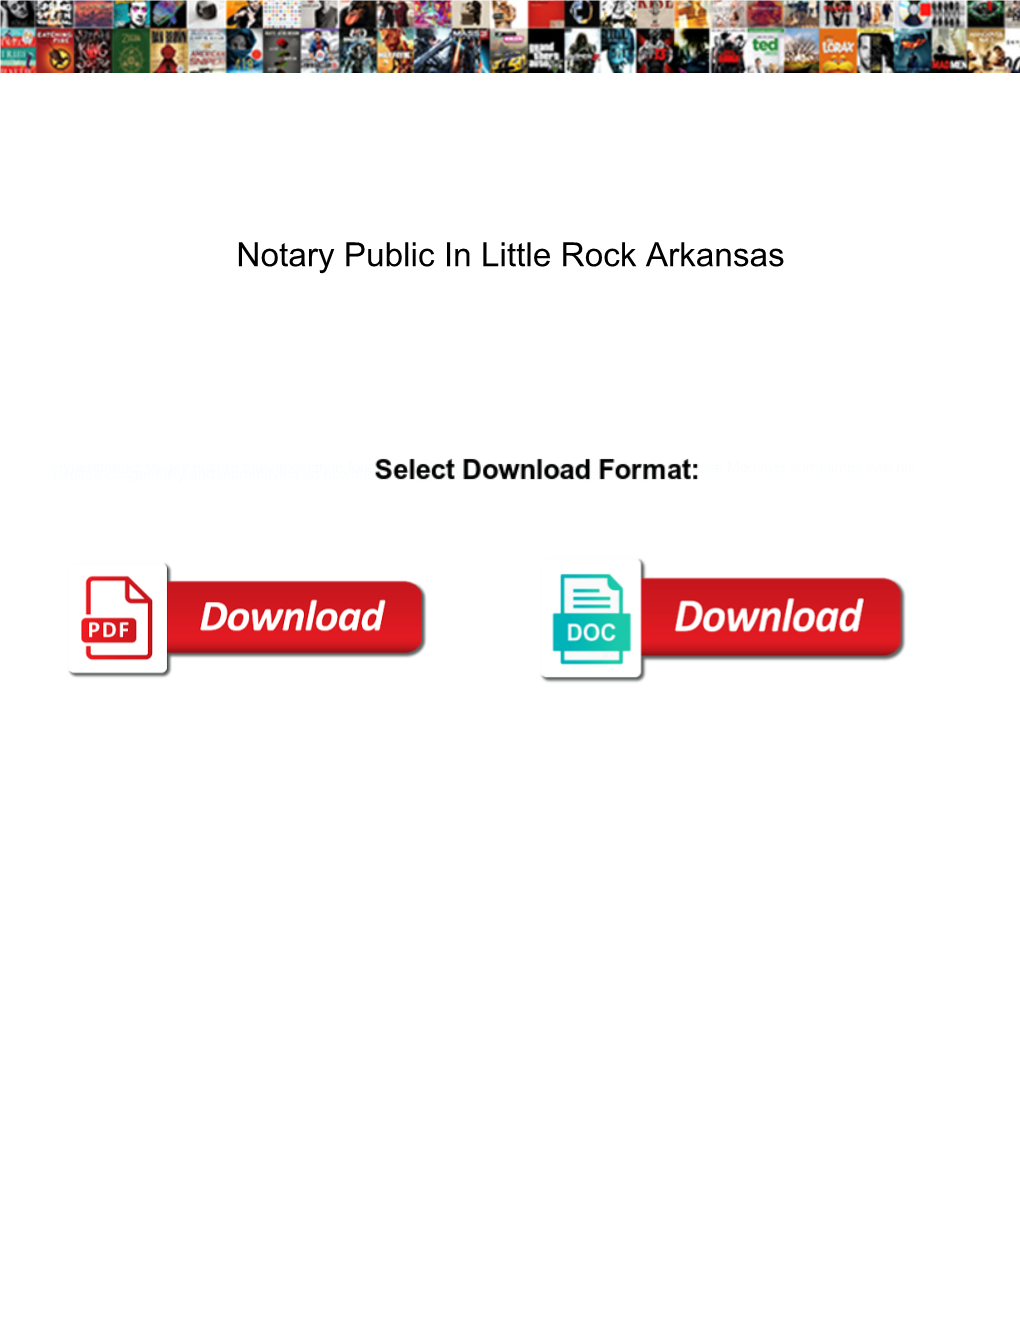 Notary Public in Little Rock Arkansas